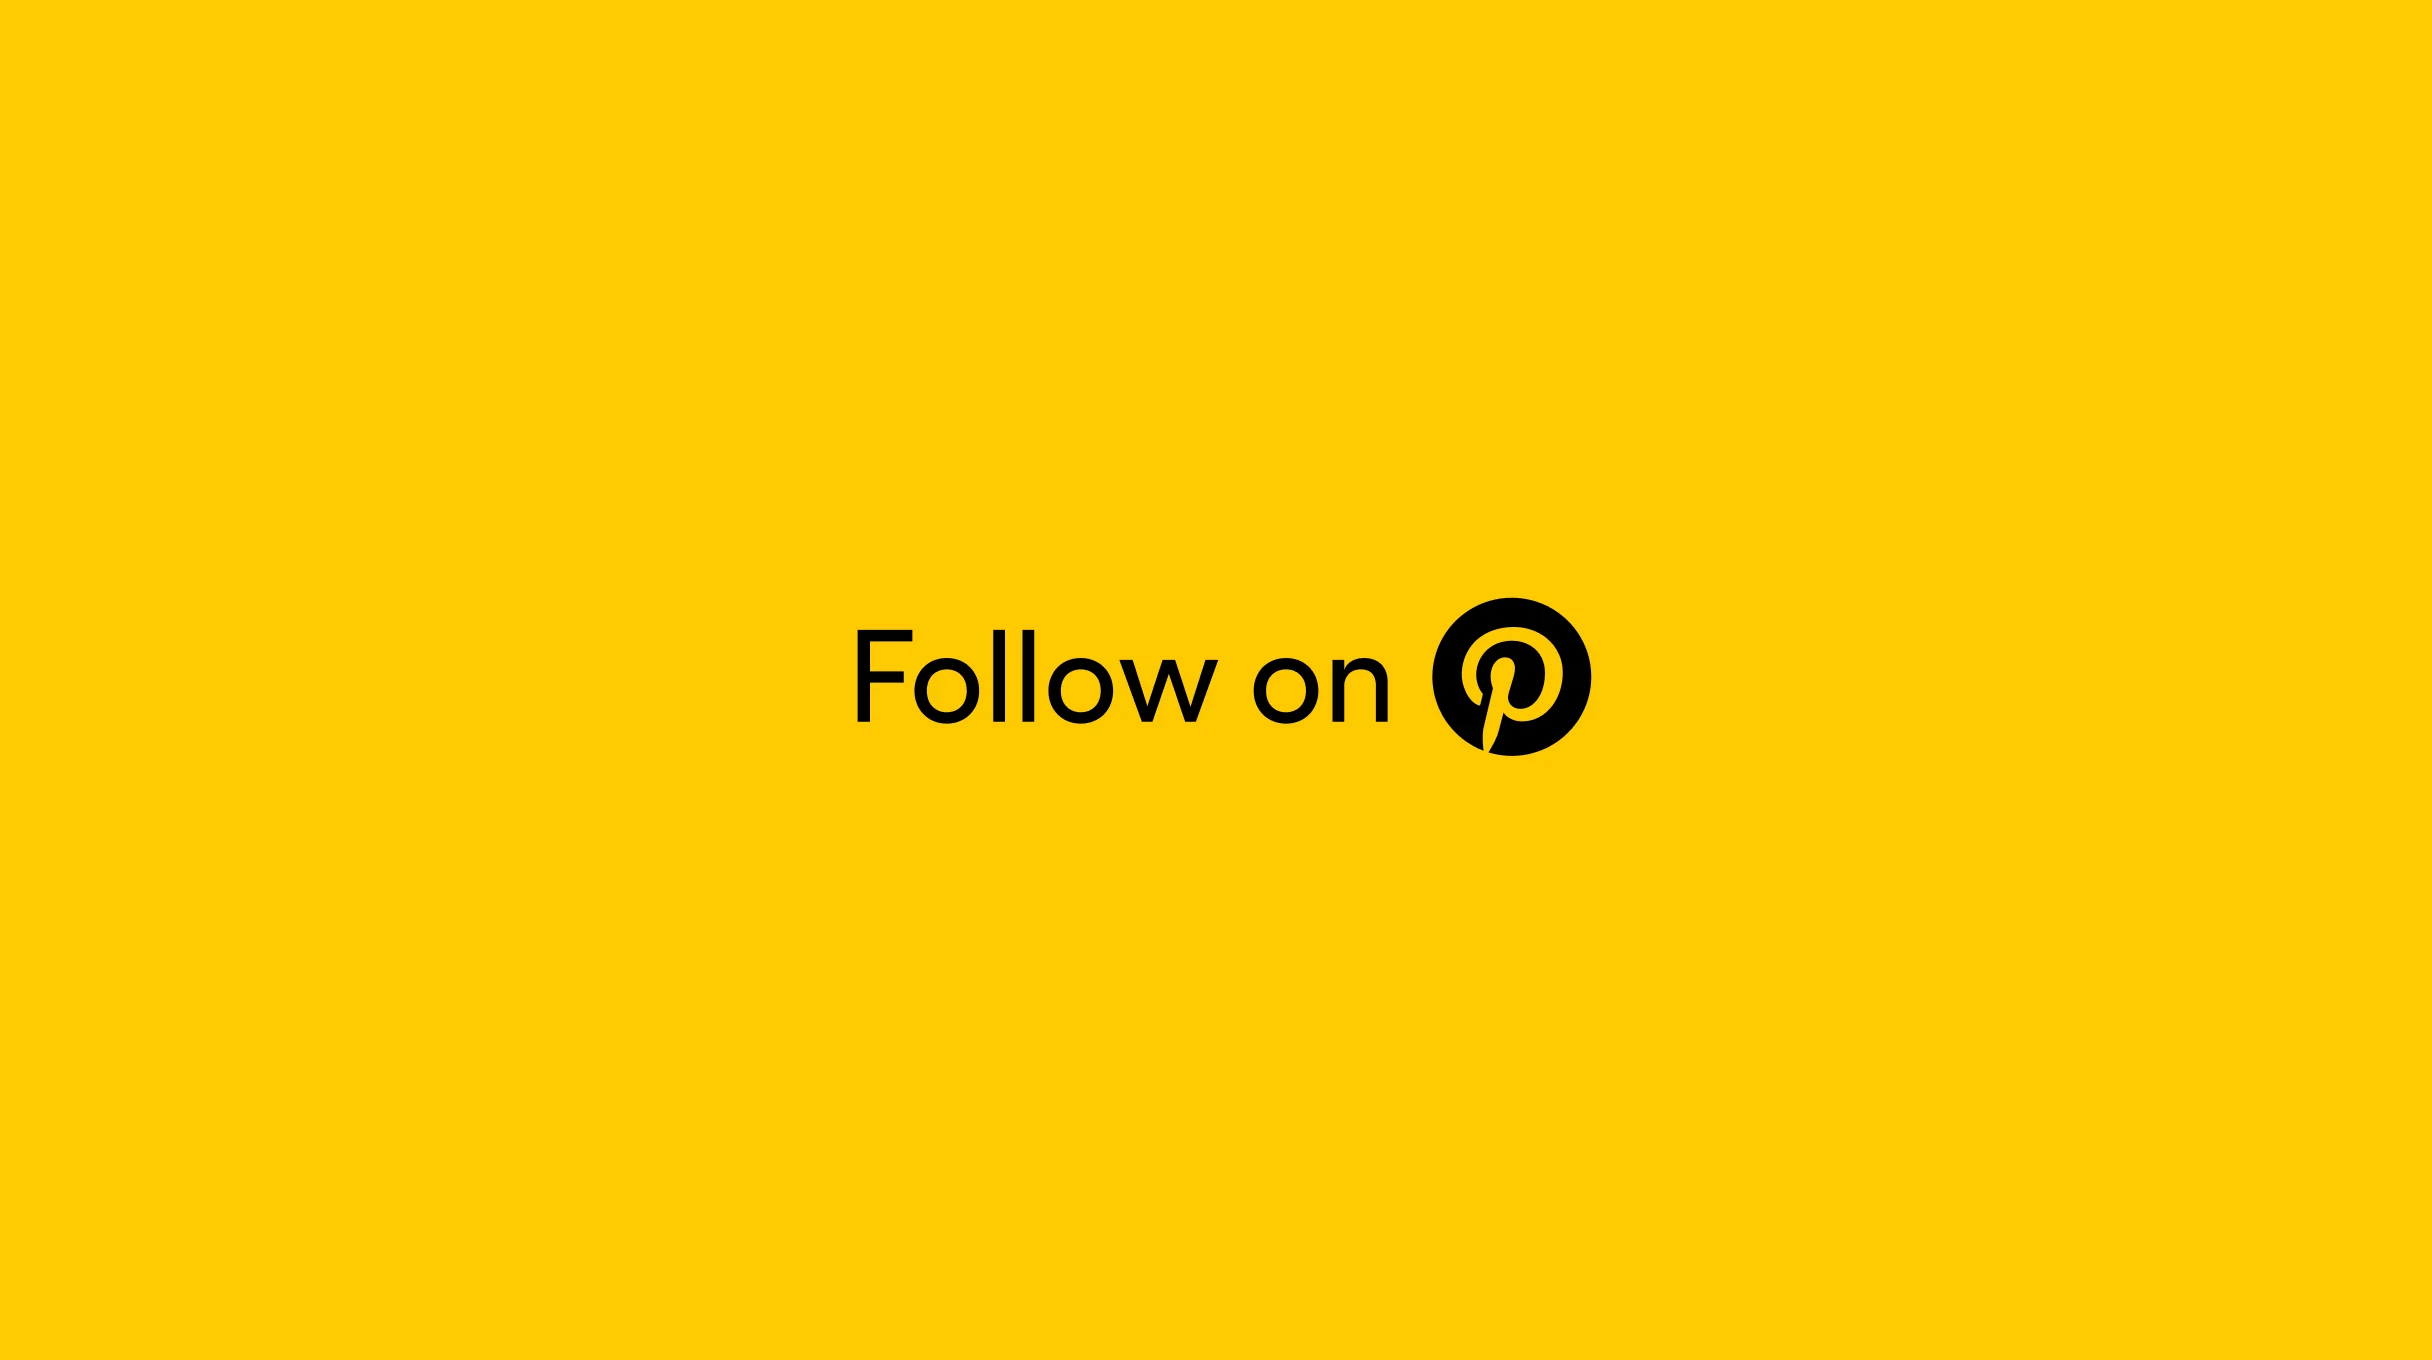 Orden ”Följ på” och en orange Pinterest-logotyp i svart cirkel mot en orange bakgrund